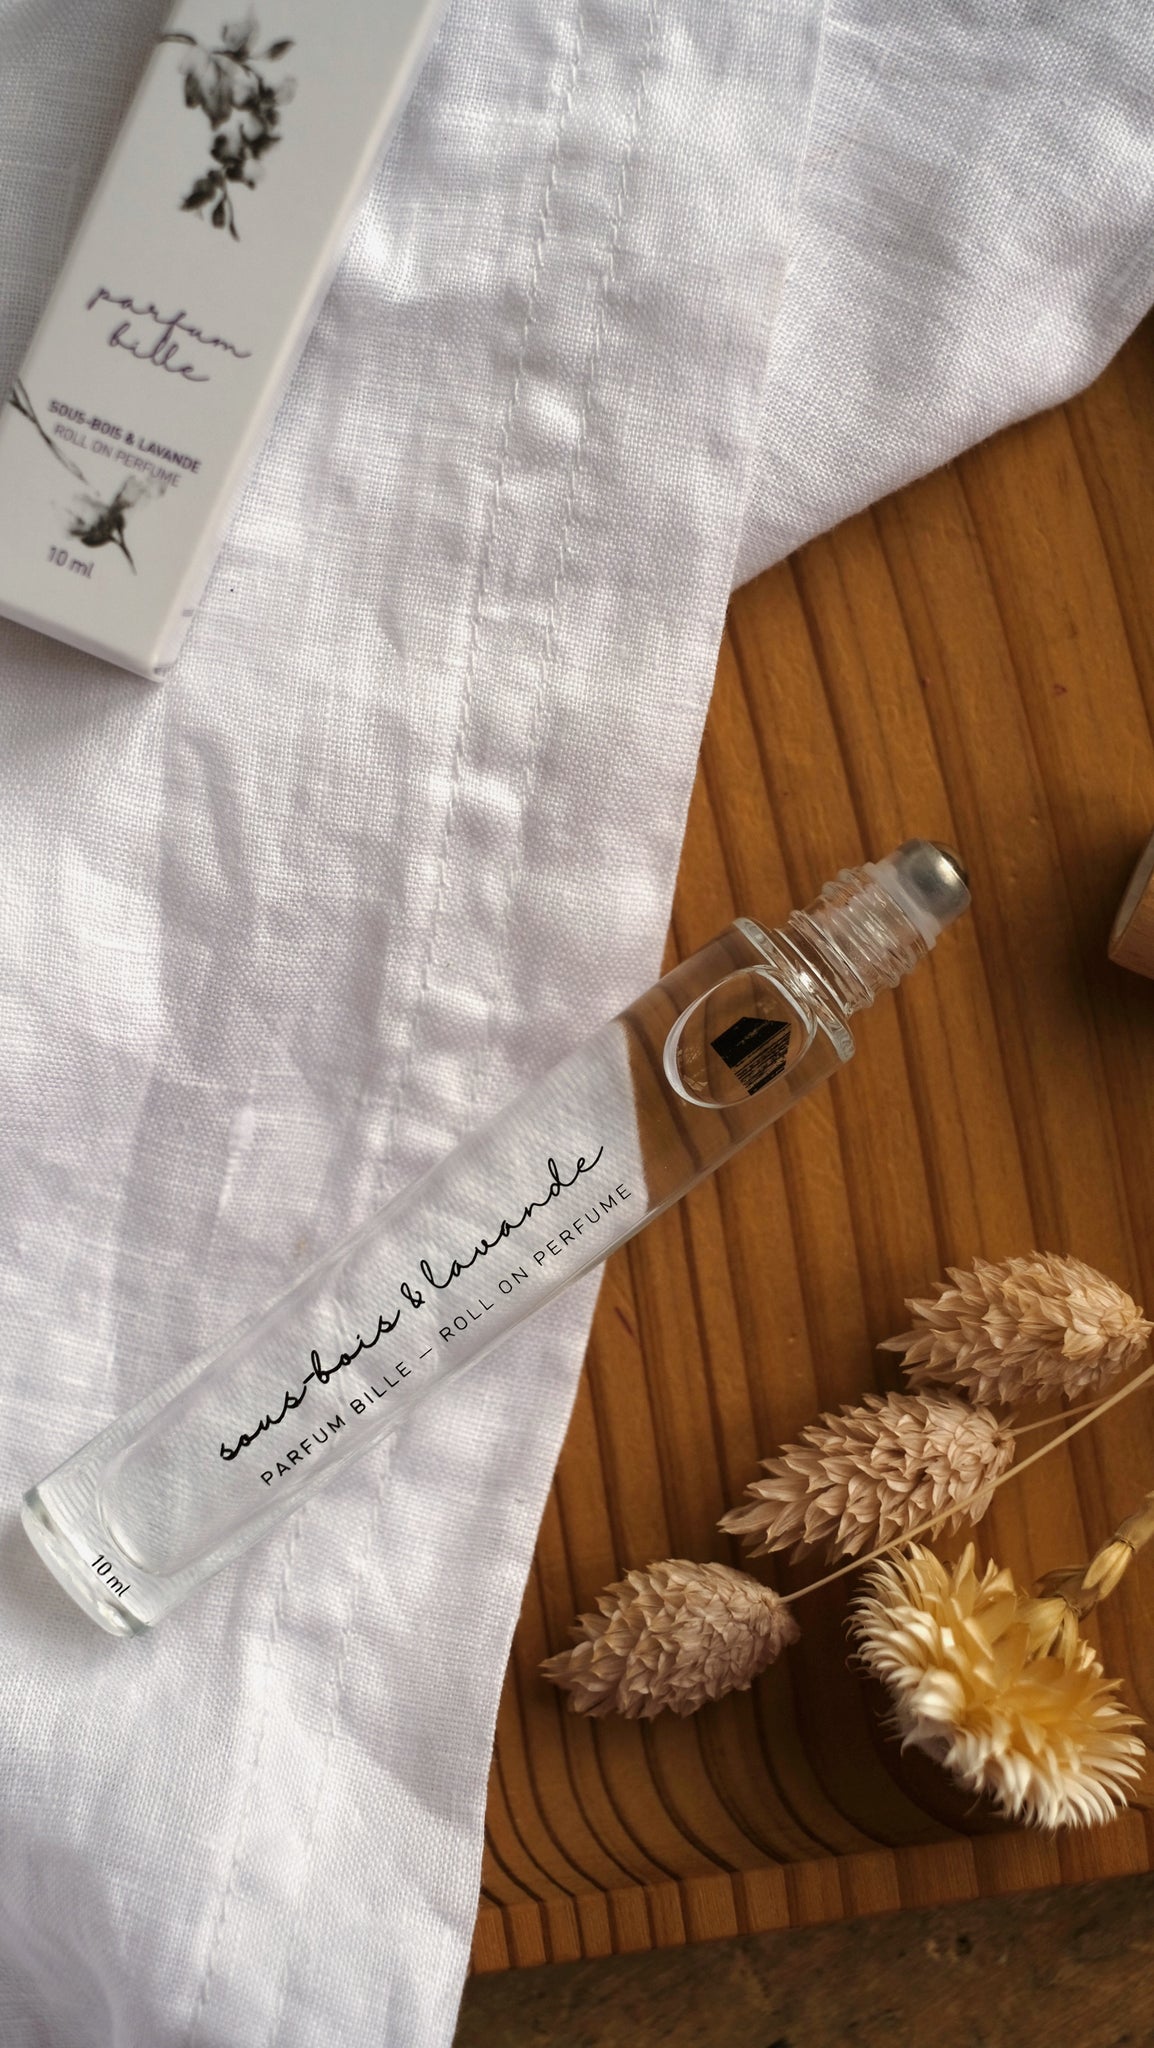 Parfum bille - Sous-bois & Lavande||Roll on perfume - Underwood & Lavender